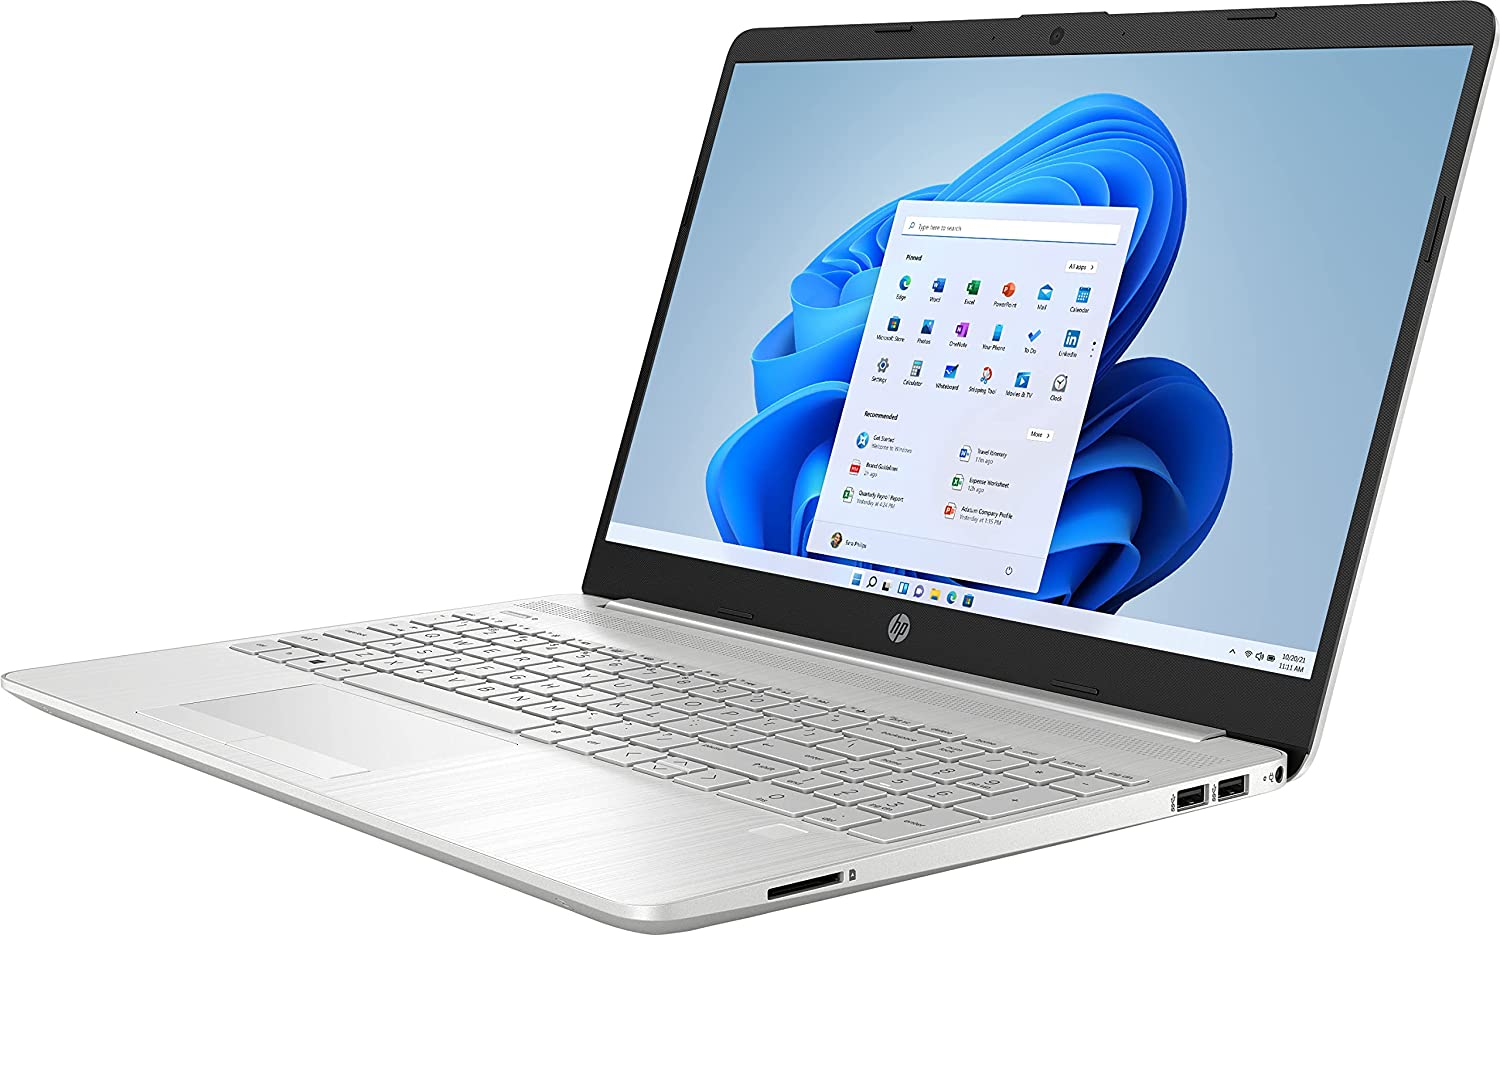 HP 15-dw Laptop Intel Core i3-1115G4 8GB 256GB SSD 15.6 Full HD WLED Win 10